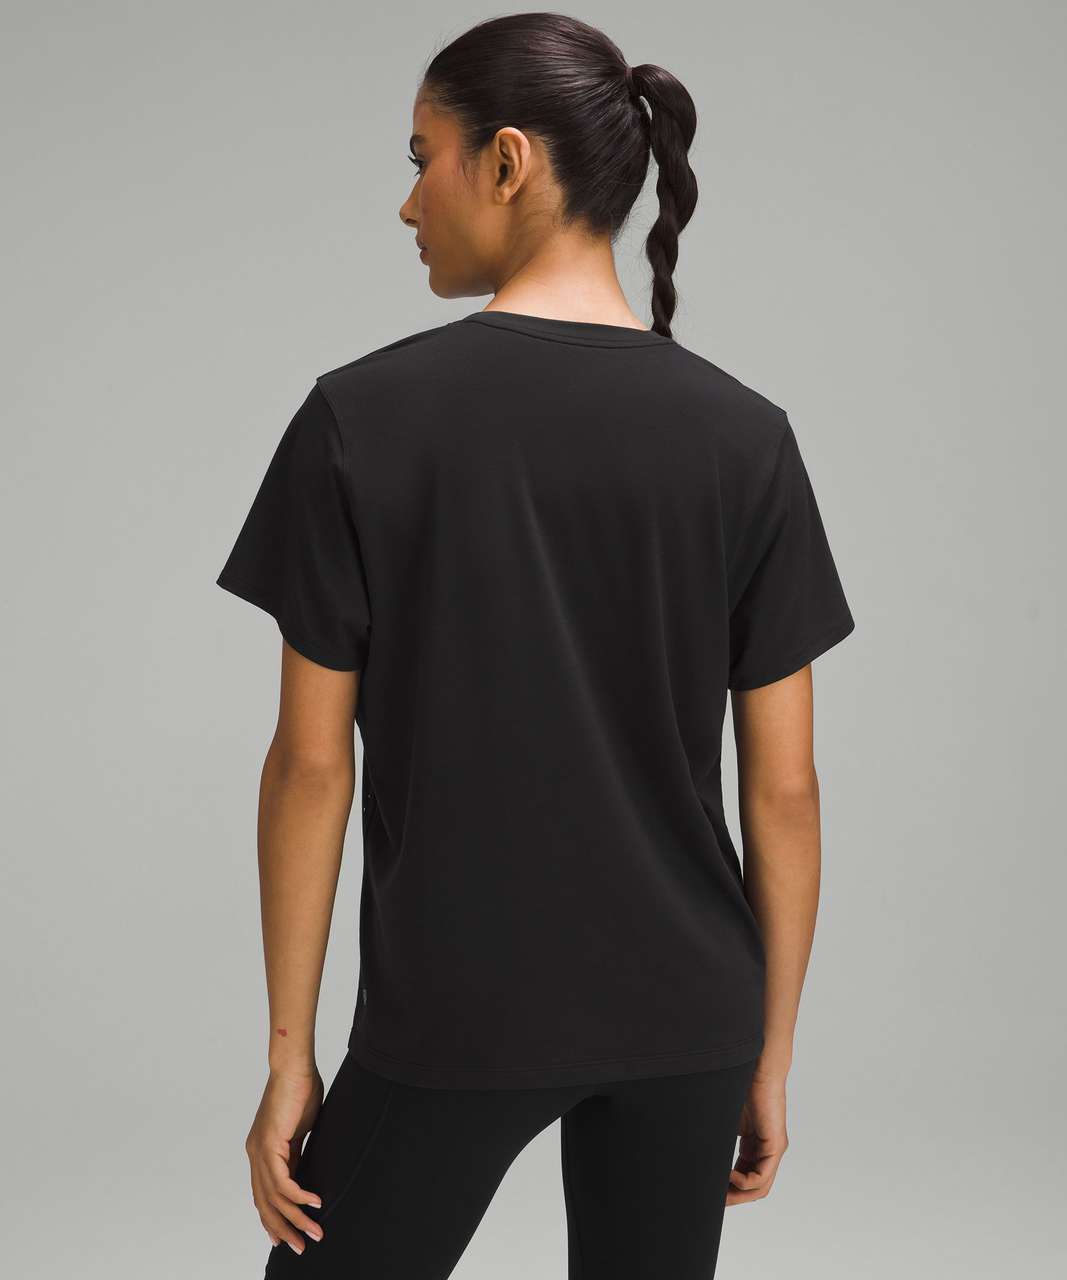 Lululemon Relaxed-Fit Running T-Shirt - Black